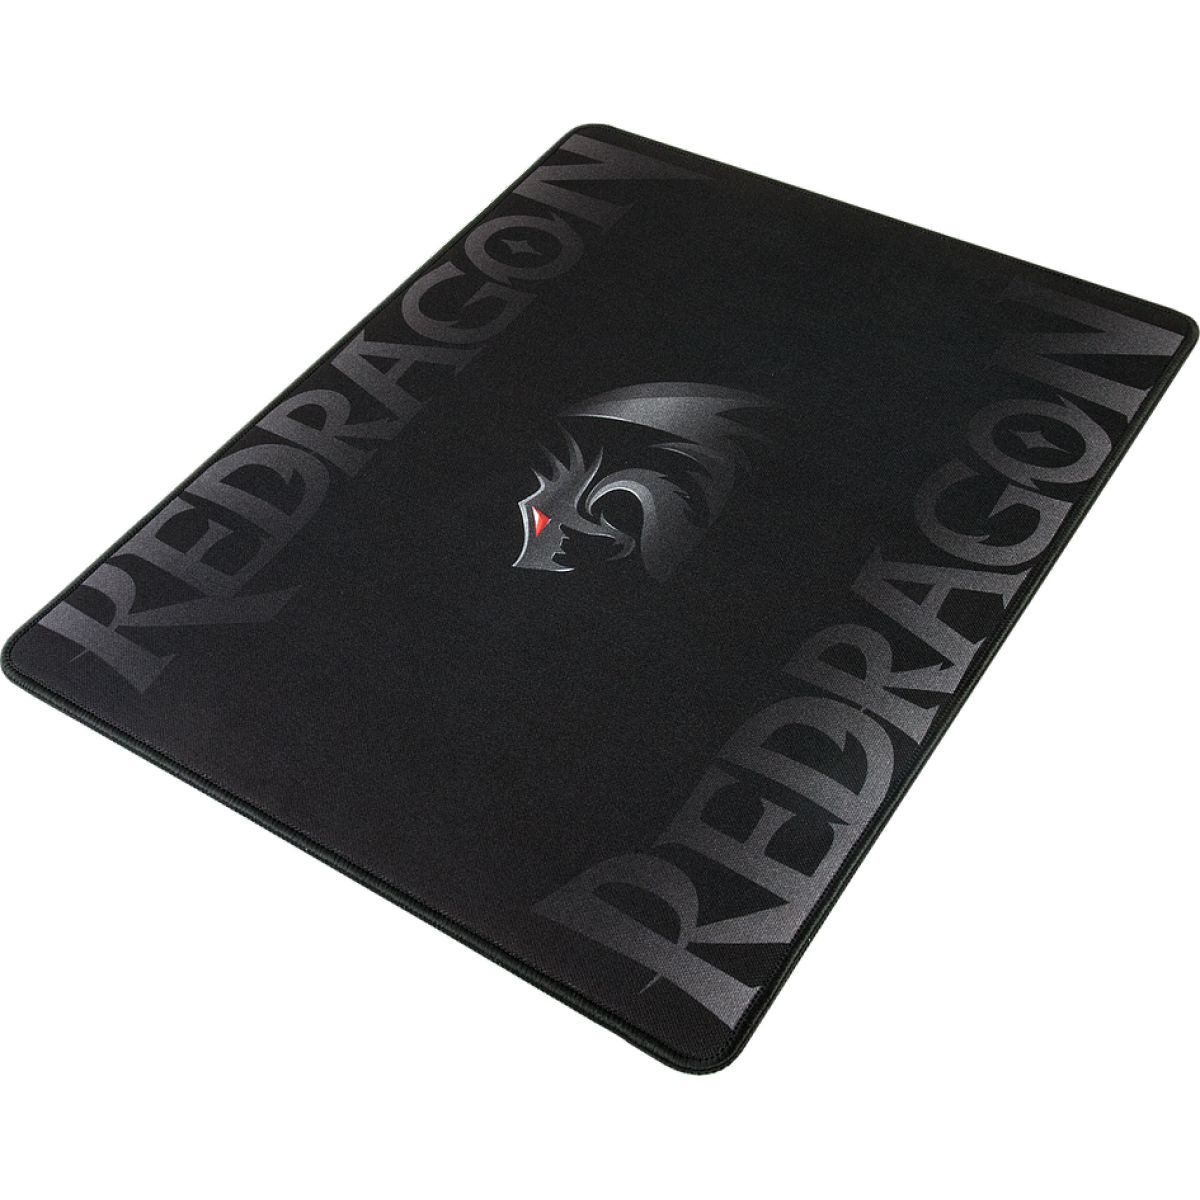 Mousepad Redragon Gamer Kunlun Control, Grande, P002